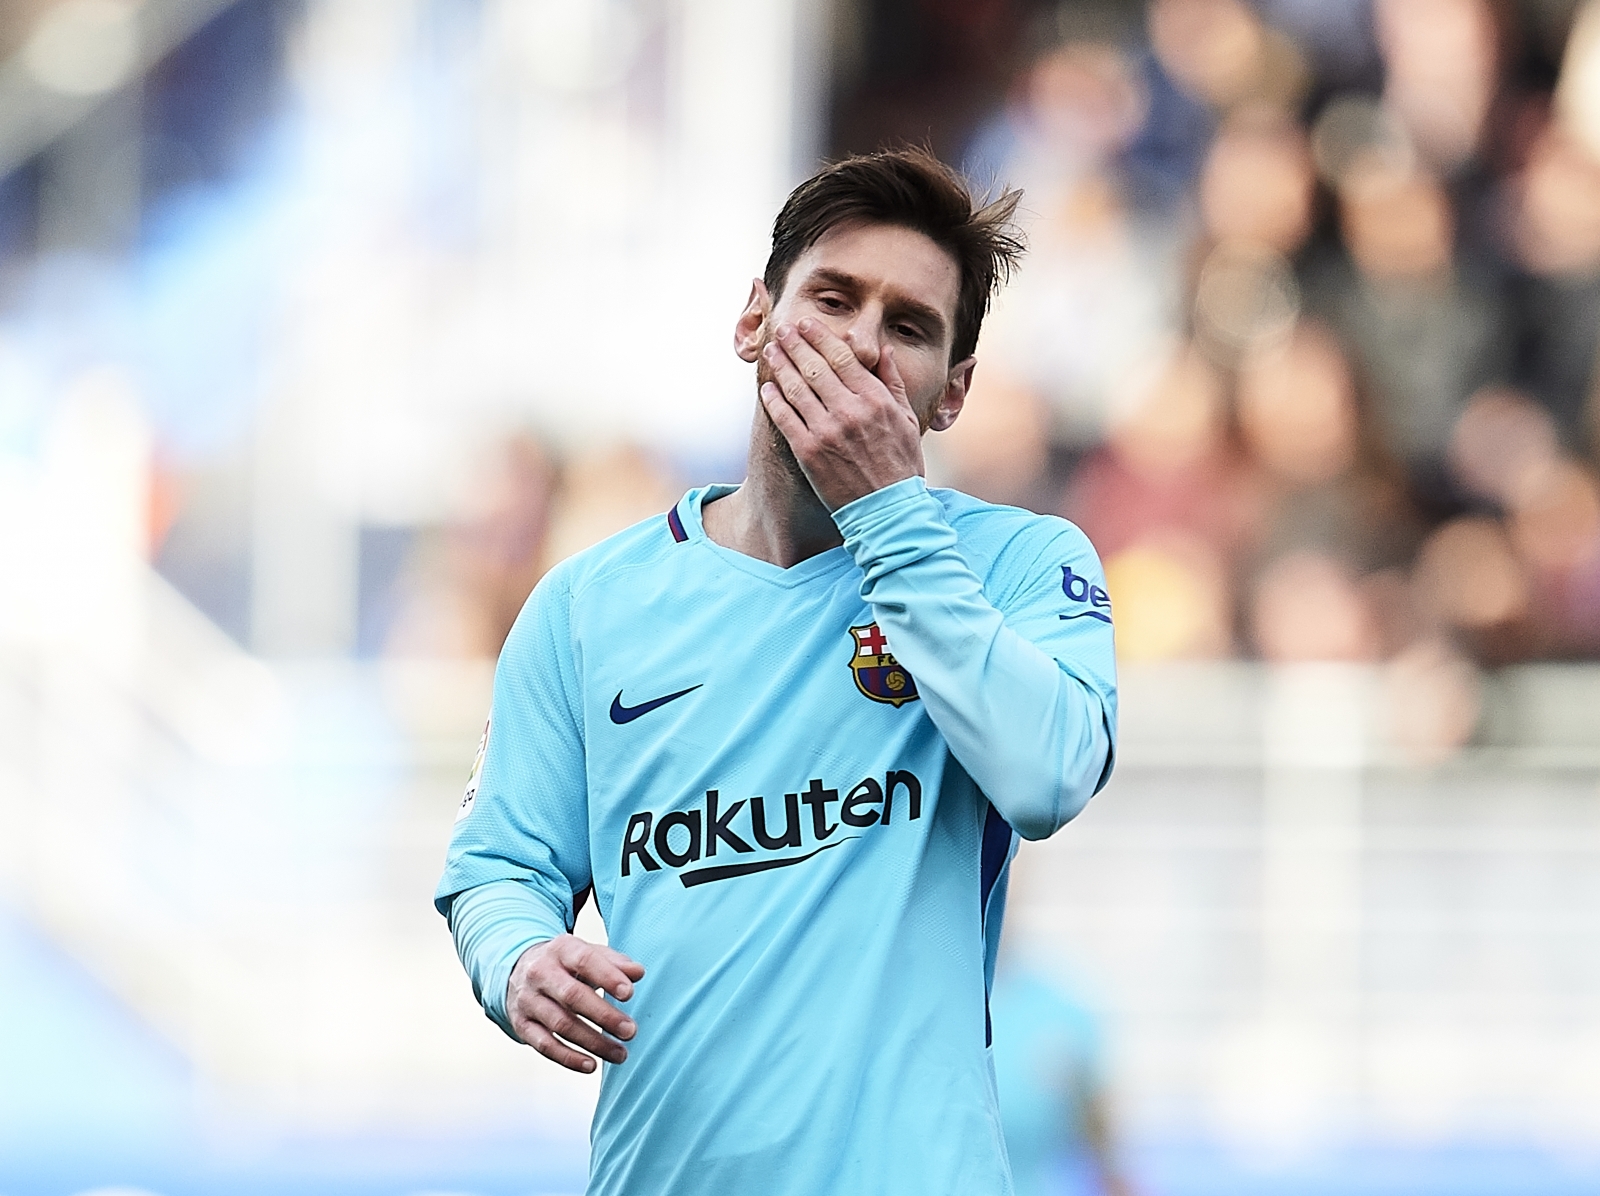 Barcelona superstar Lionel Messi arrives at Chelsea after claiming